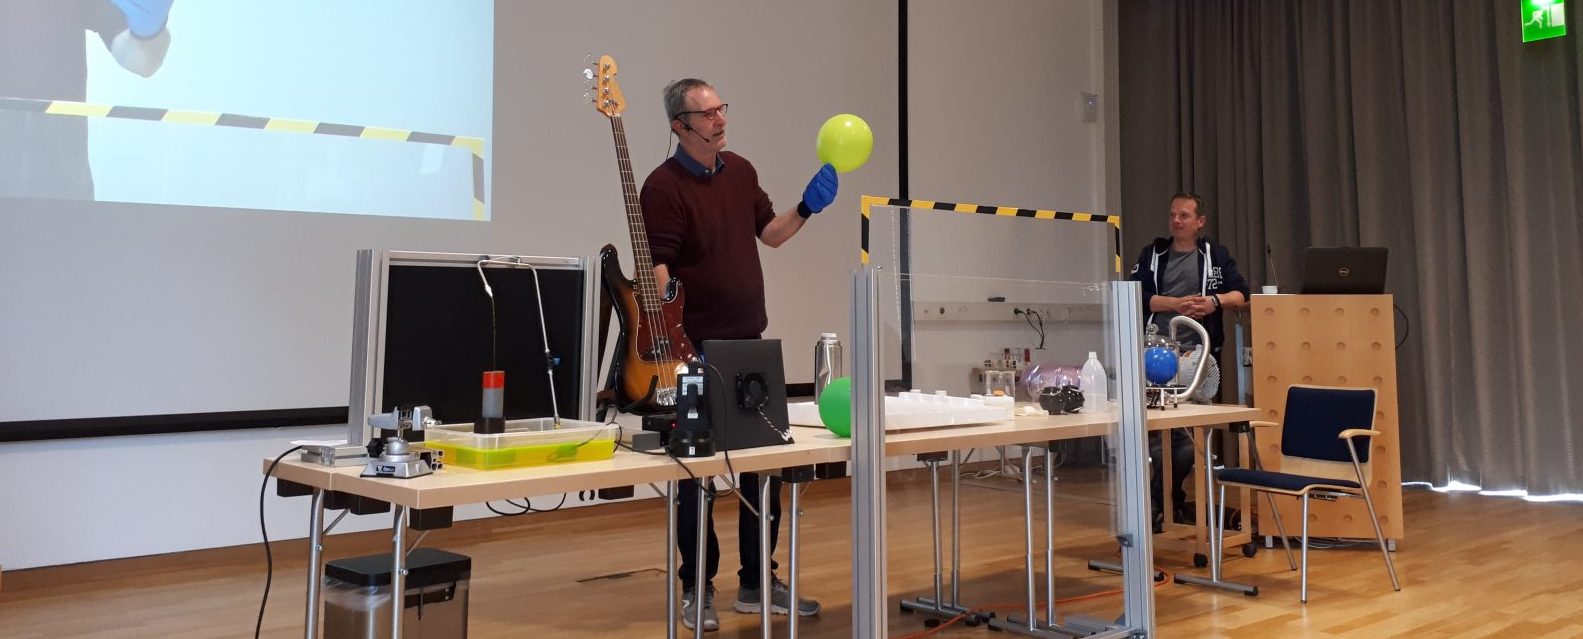 Zusehen ist der Physiker Torsten Kachel mit einem Luftballon in der Hand. Er wird in in flüssigen Stickstoff tauchen.